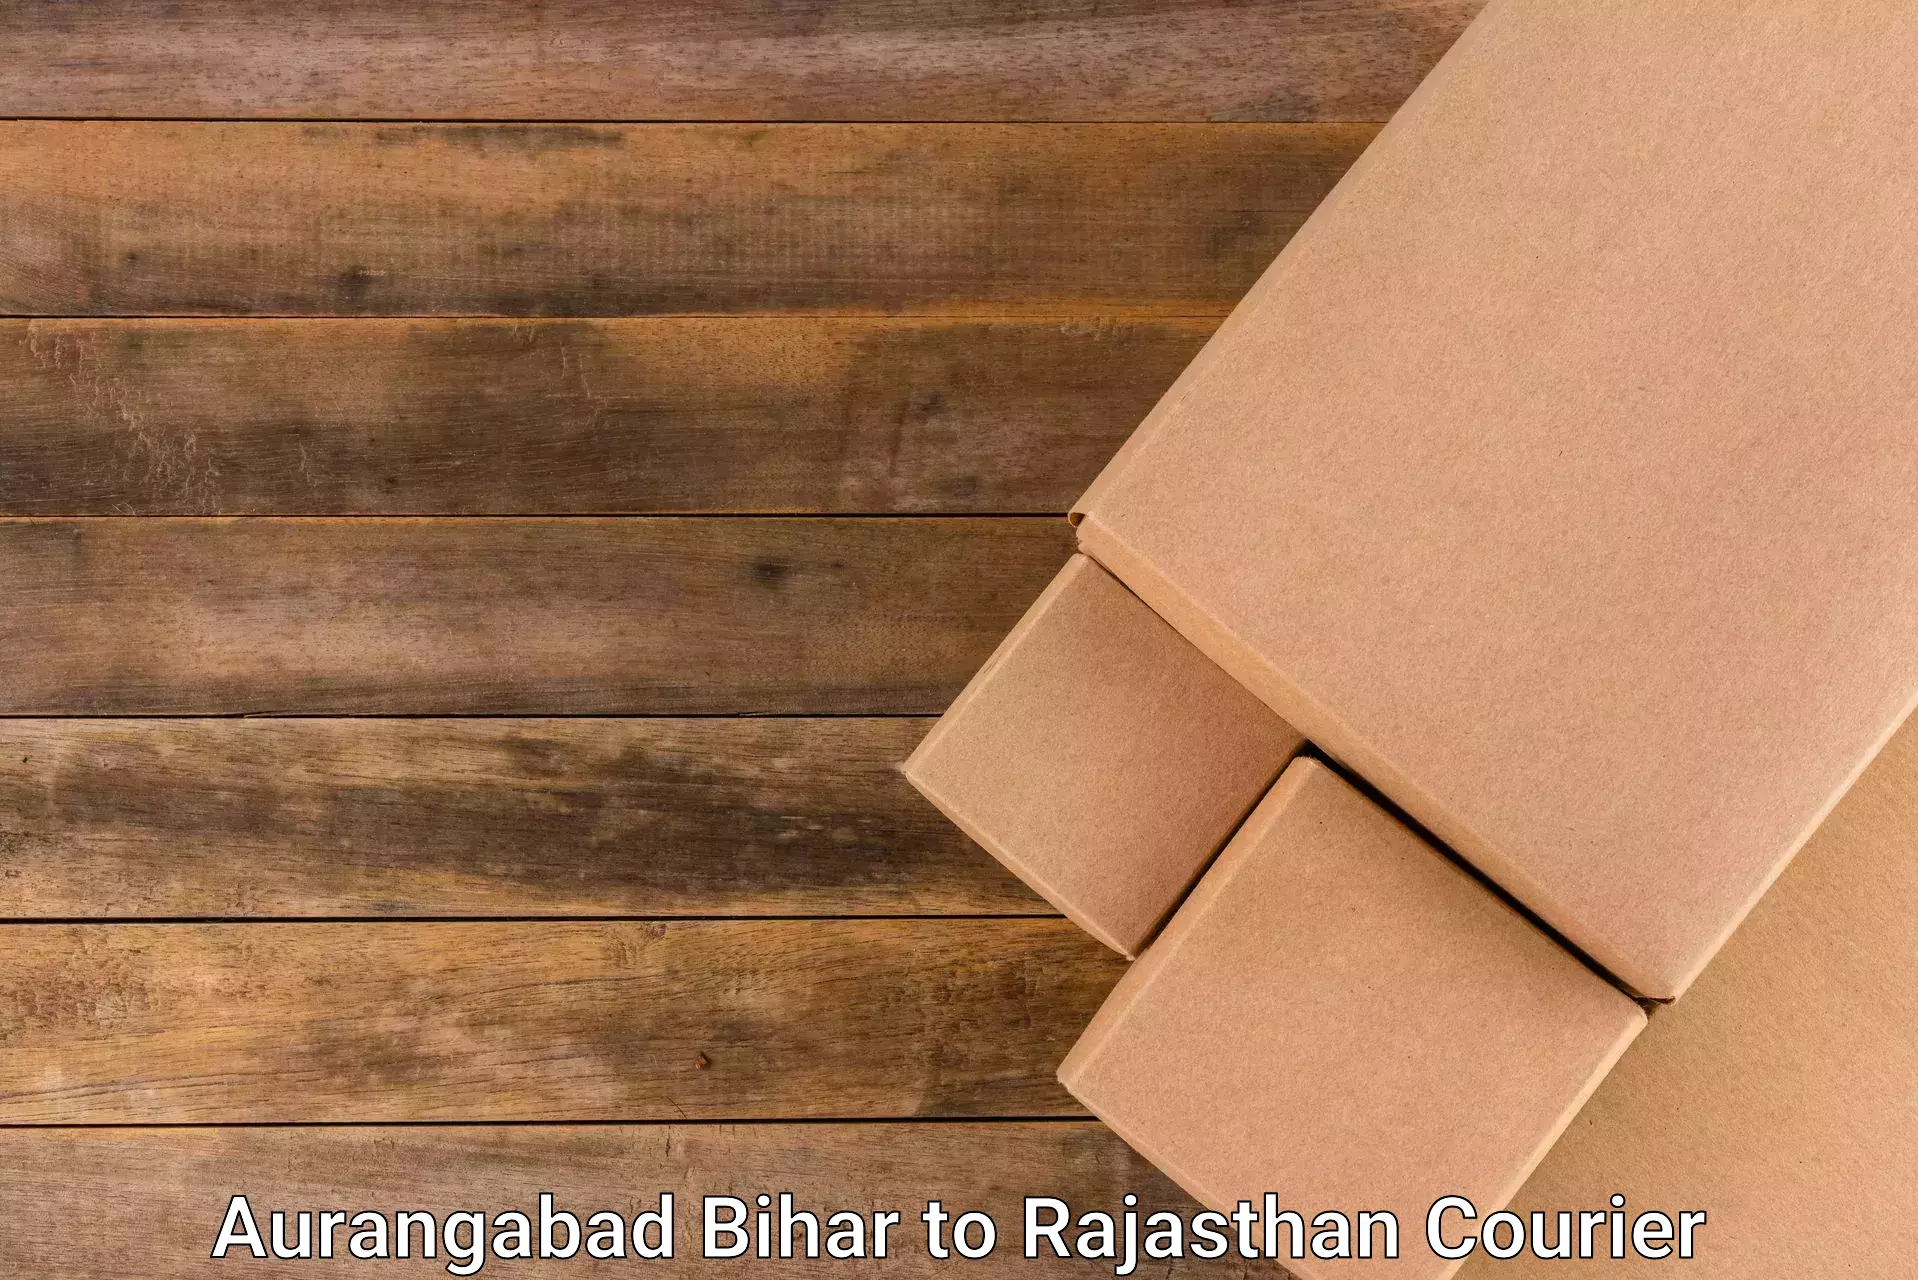 Comprehensive freight services Aurangabad Bihar to IIIT Kota